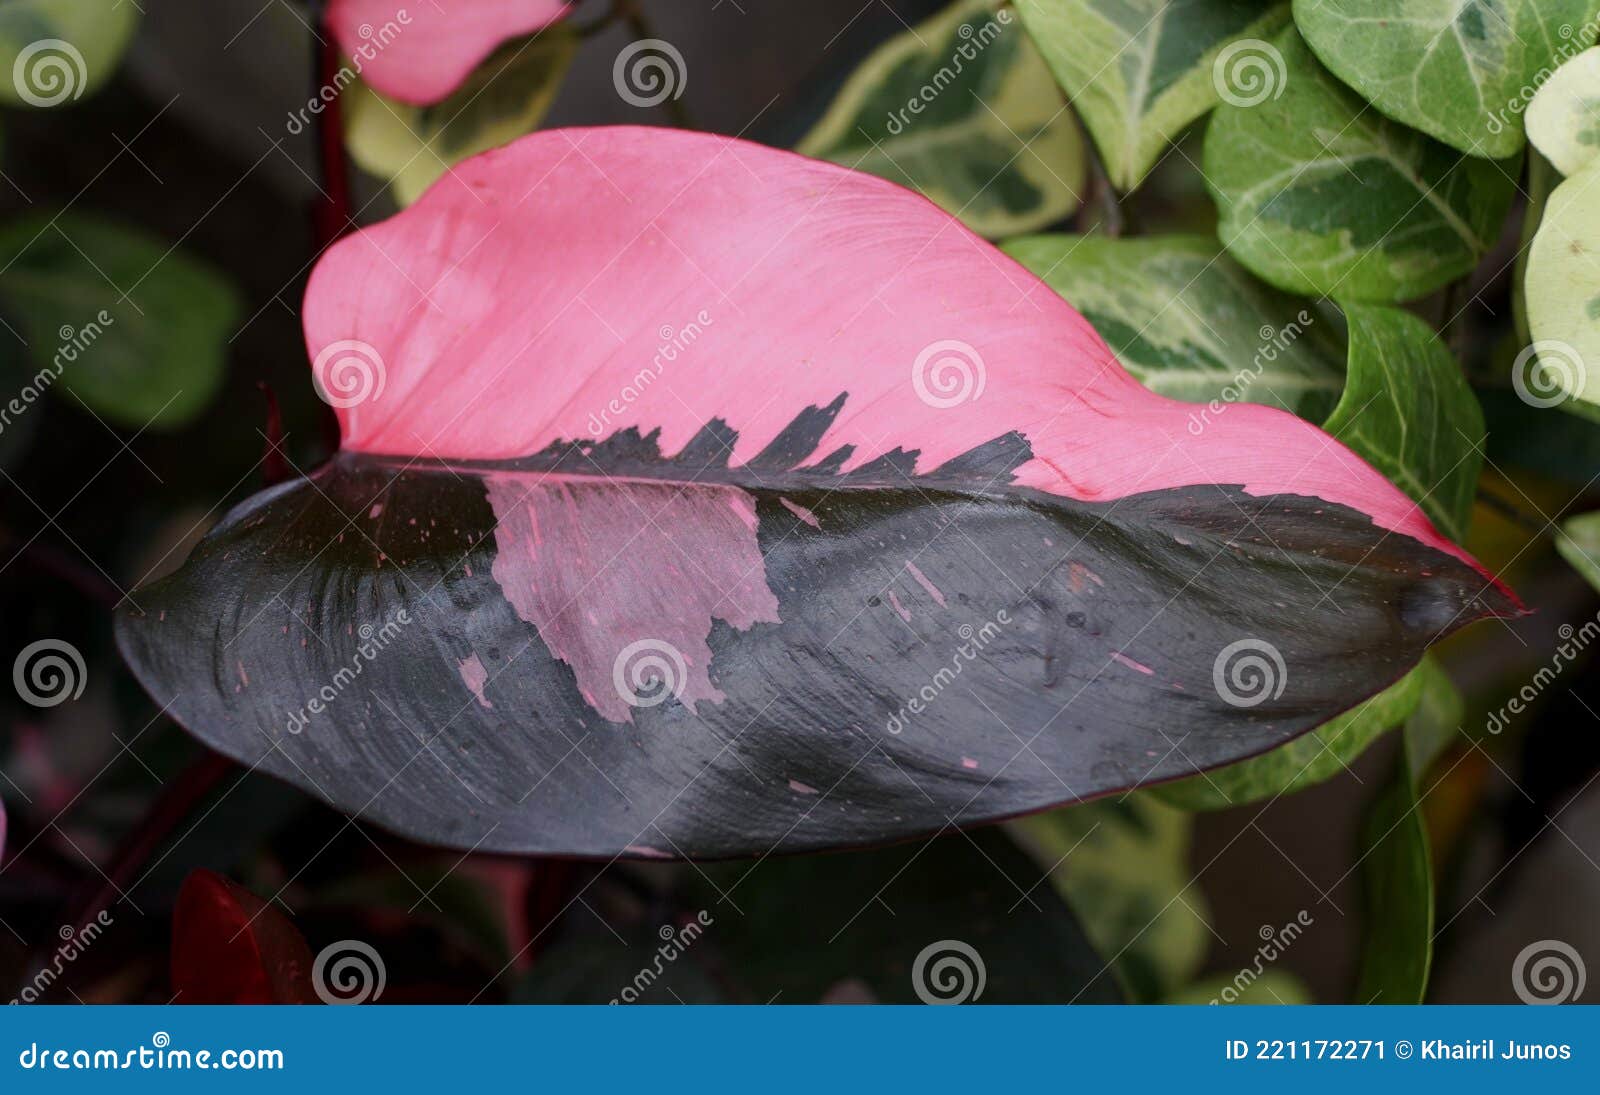 Bella Hoja Rosa Y Negra De Fililodendron Princesa Rosa Planta Tropical  Imagen de archivo - Imagen de brillante, tropical: 221172271